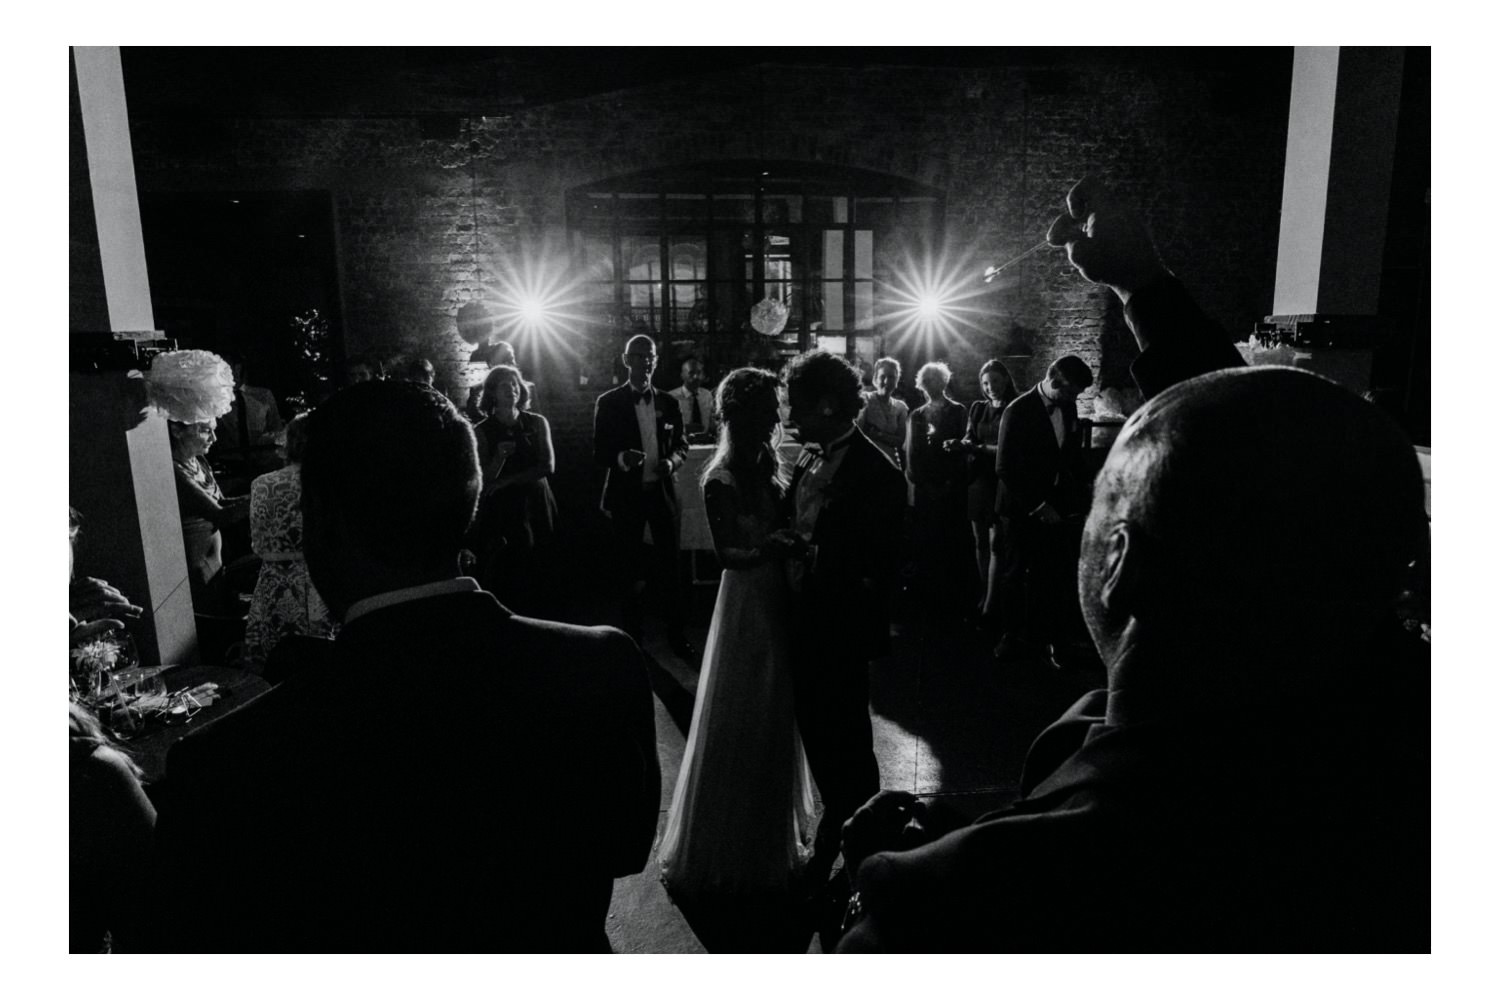 Das Brautpaar tanzt im Mittelpunkt des Geschehens, umgeben von den lachenden Gesichtern der Gäste. Das Gegenlicht der Blitze verleiht der Szene eine magische Atmosphäre, während das Brautpaar den Moment des ersten Tanzes in vollen Zügen genießt.